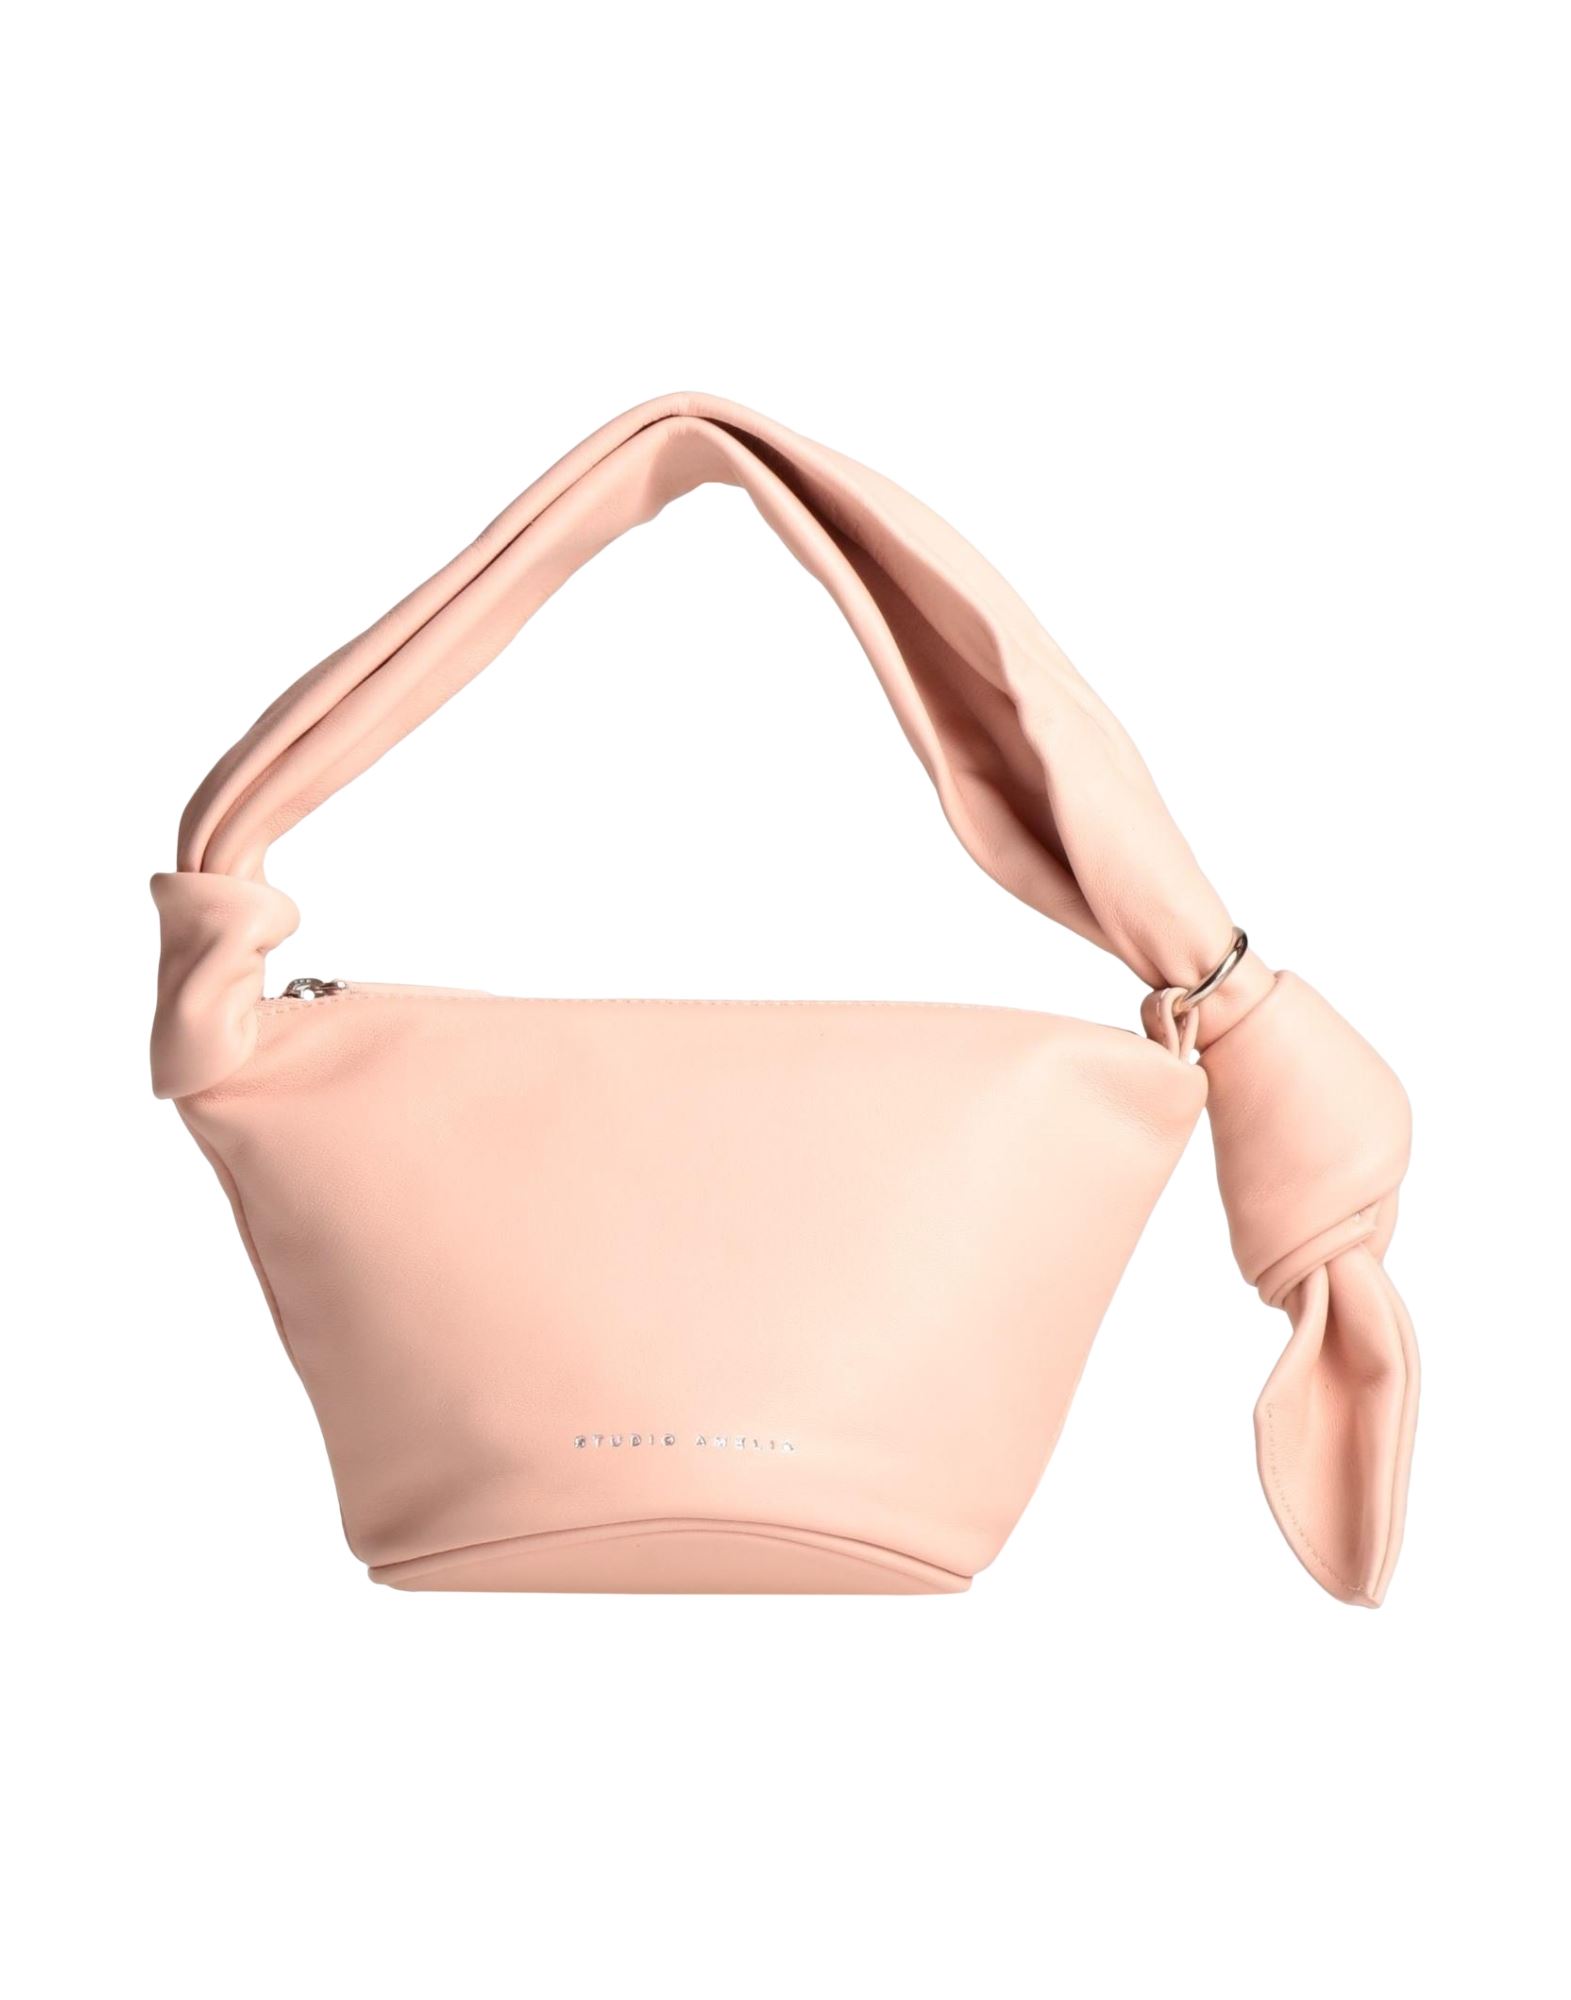 Studio Amelia Handbags In Pink